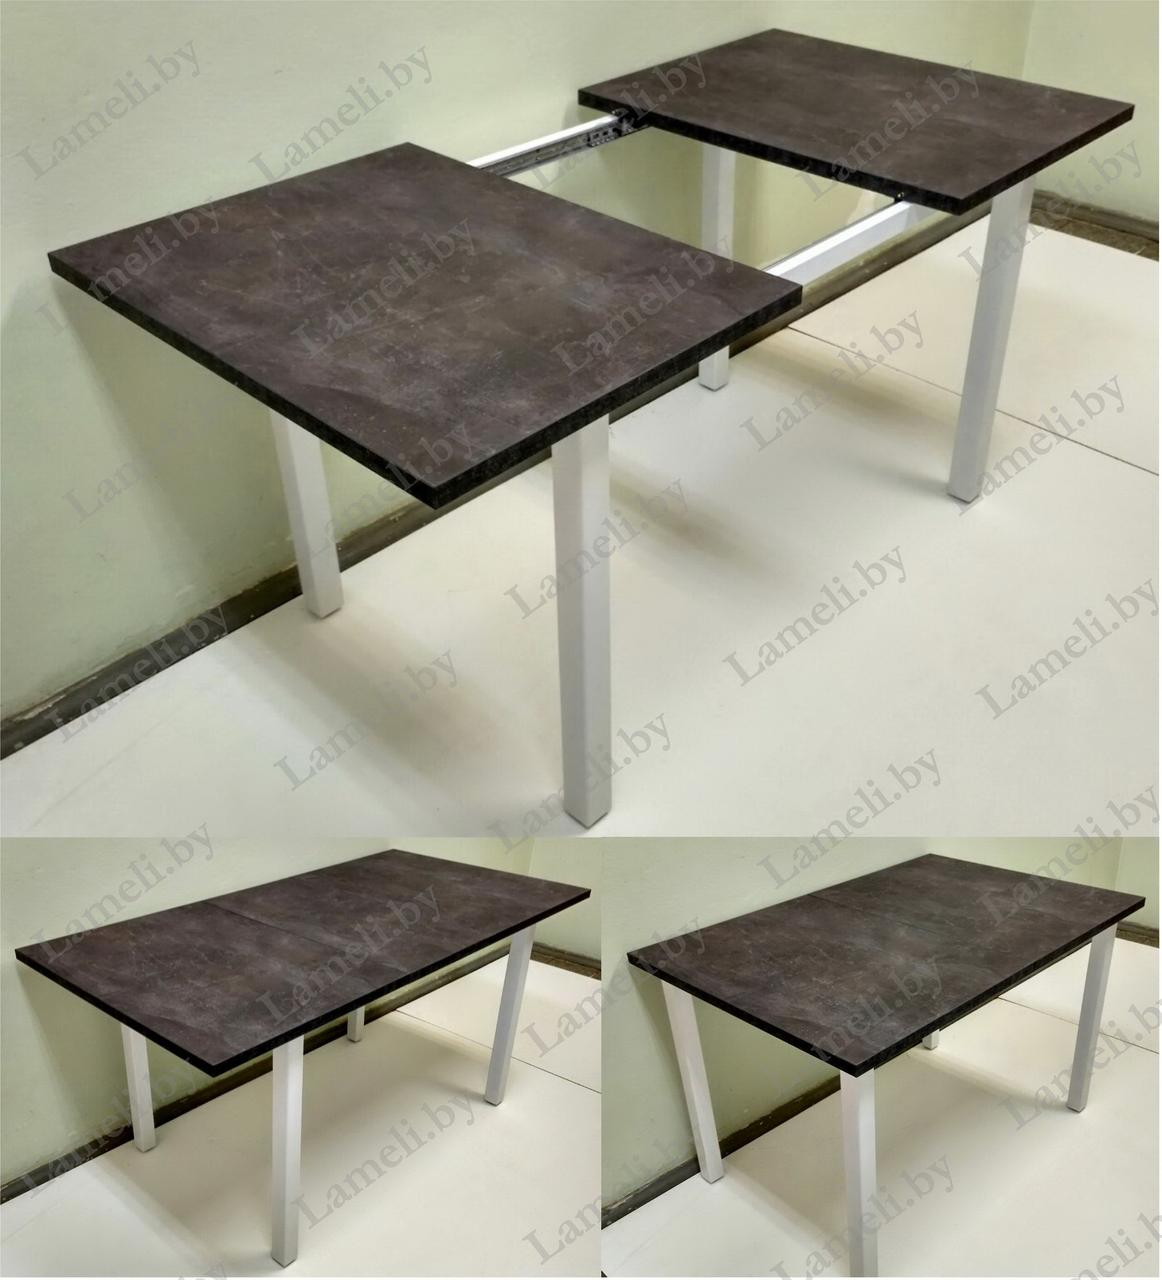 РАЗДВИЖНОЙ стол из массива дуба, ЛДСП или постформинга на металлической раме серии Т. ЛЮБОЙ размер и цвет.